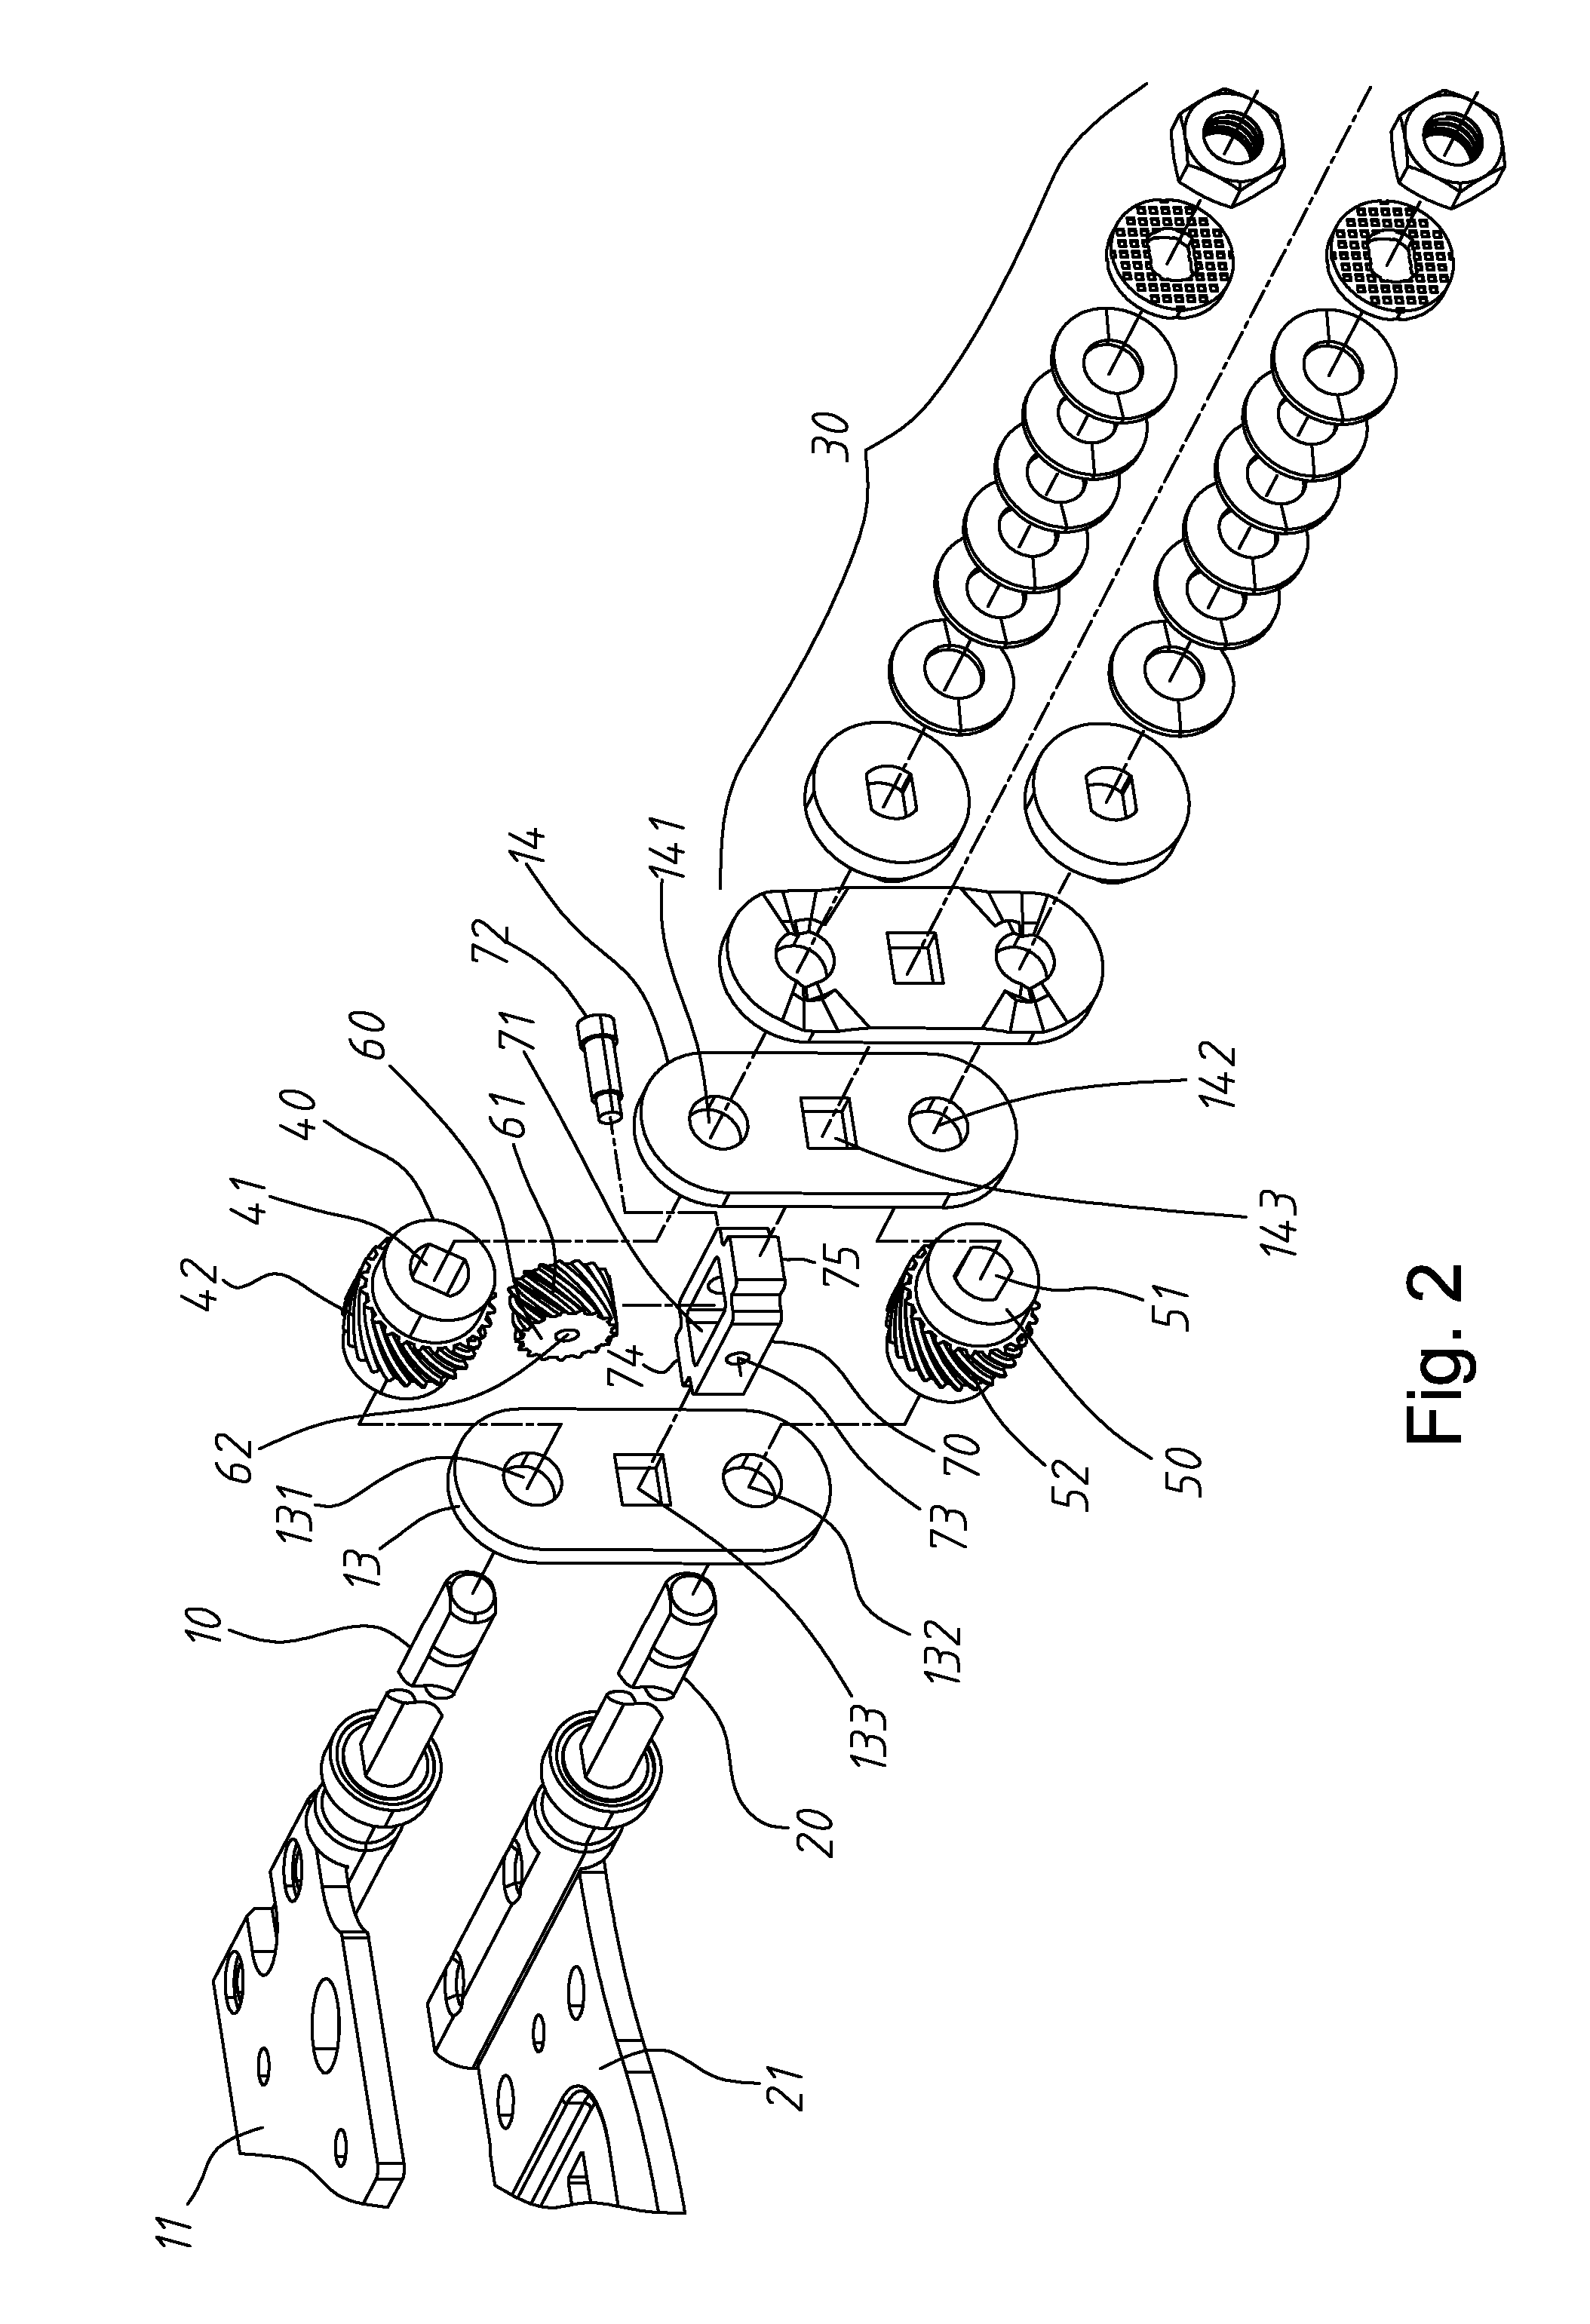 Transmission mechanism for dual-shaft hinge